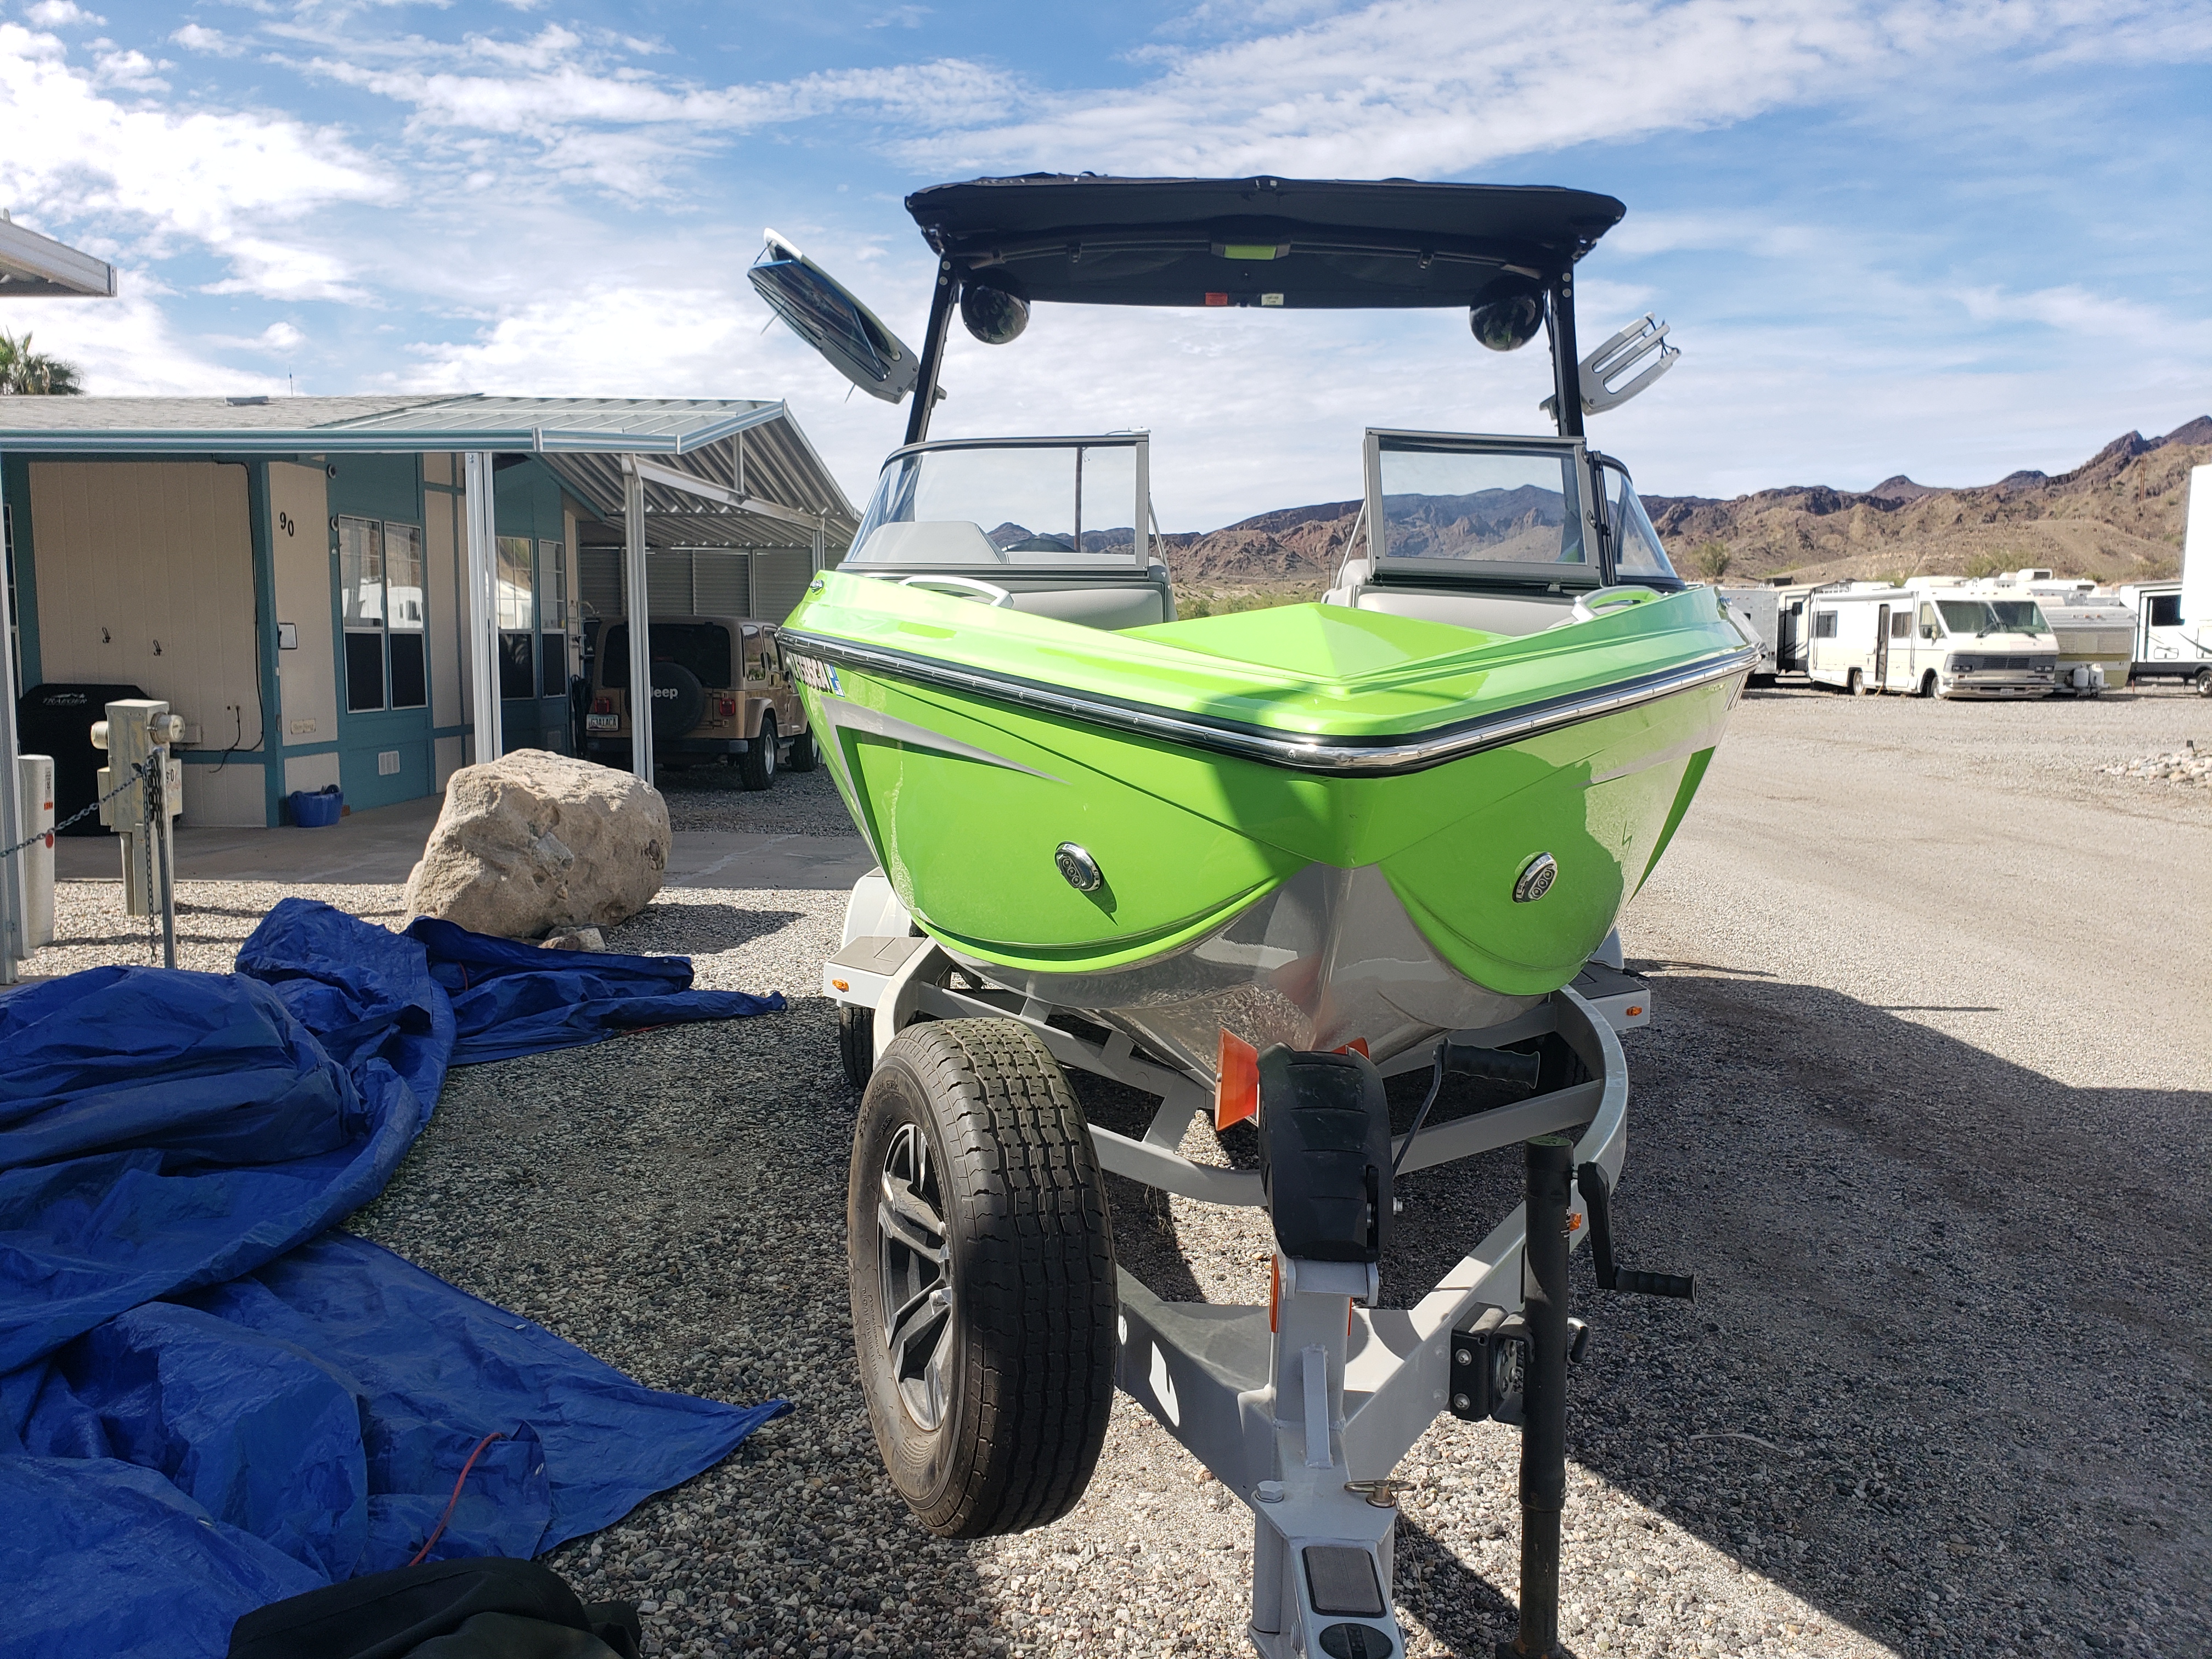 2019 Tige R21 Ski Boat for sale in Oak Glen, CA - image 4 